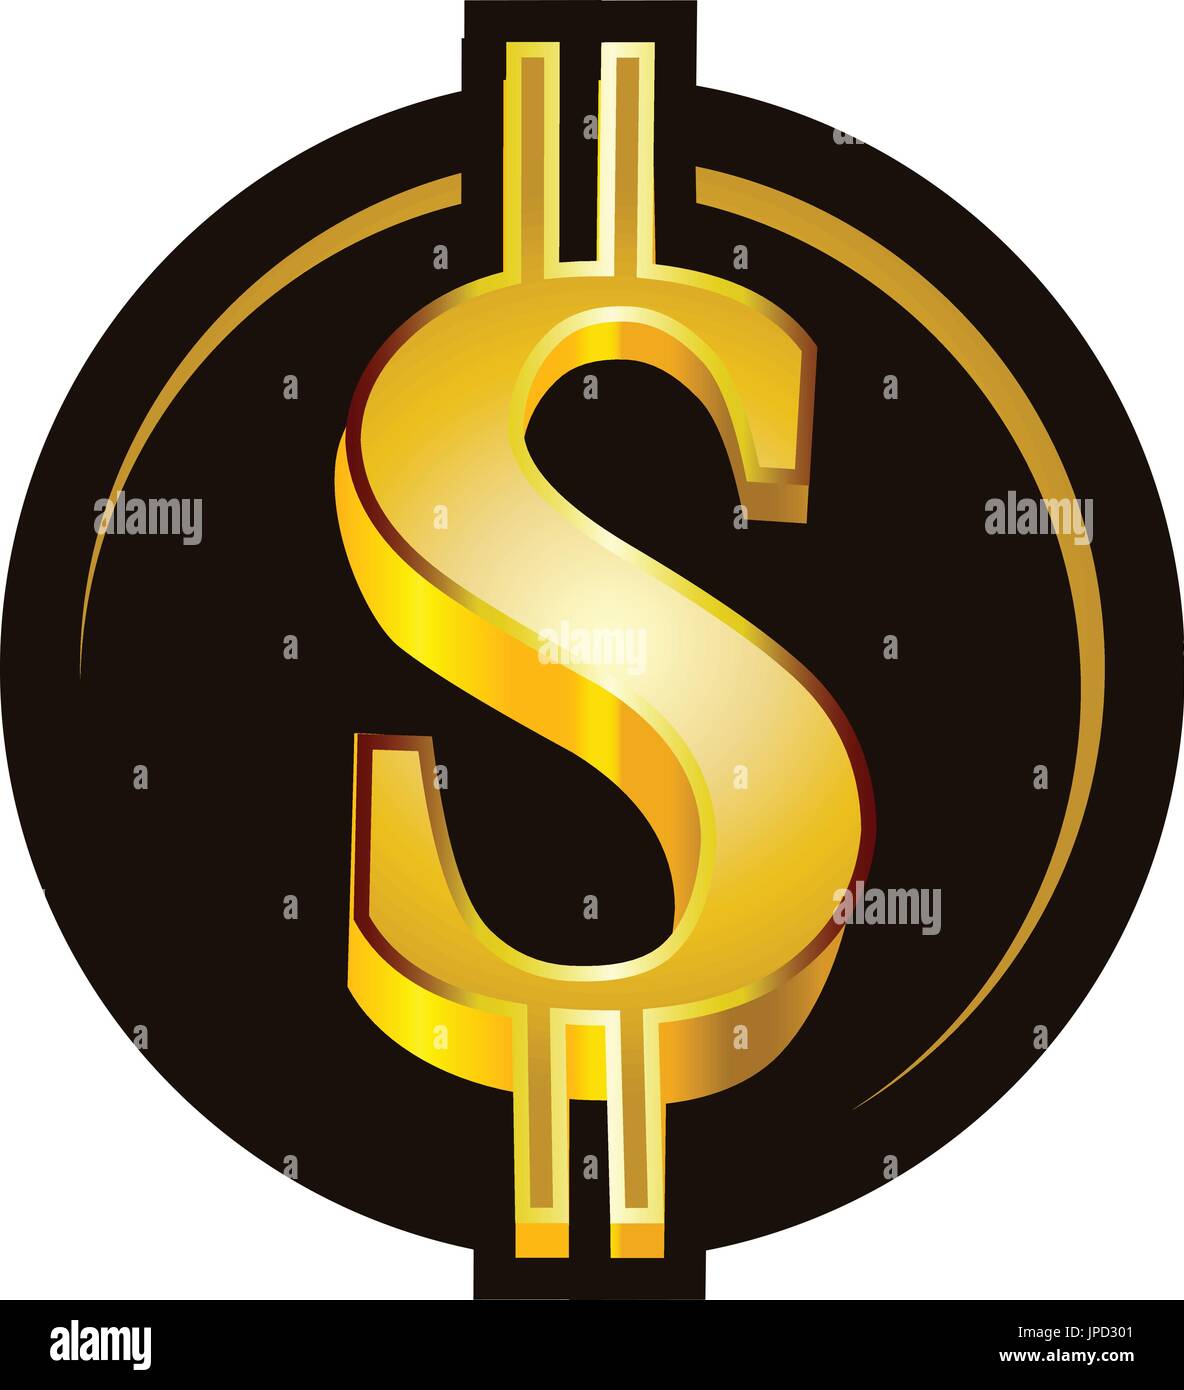 Biểu tượng đô la - Biểu tượng đô la - một trong những biểu tượng tiền tệ phổ biến nhất trên thế giới, đại diện cho sự giàu có và quyền lực. Từ nghệ thuật đến kinh doanh, biểu tượng đô la là một phần không thể thiếu trong cuộc sống. Hãy cùng khám phá những hình ảnh đẹp mắt và thú vị về biểu tượng này.